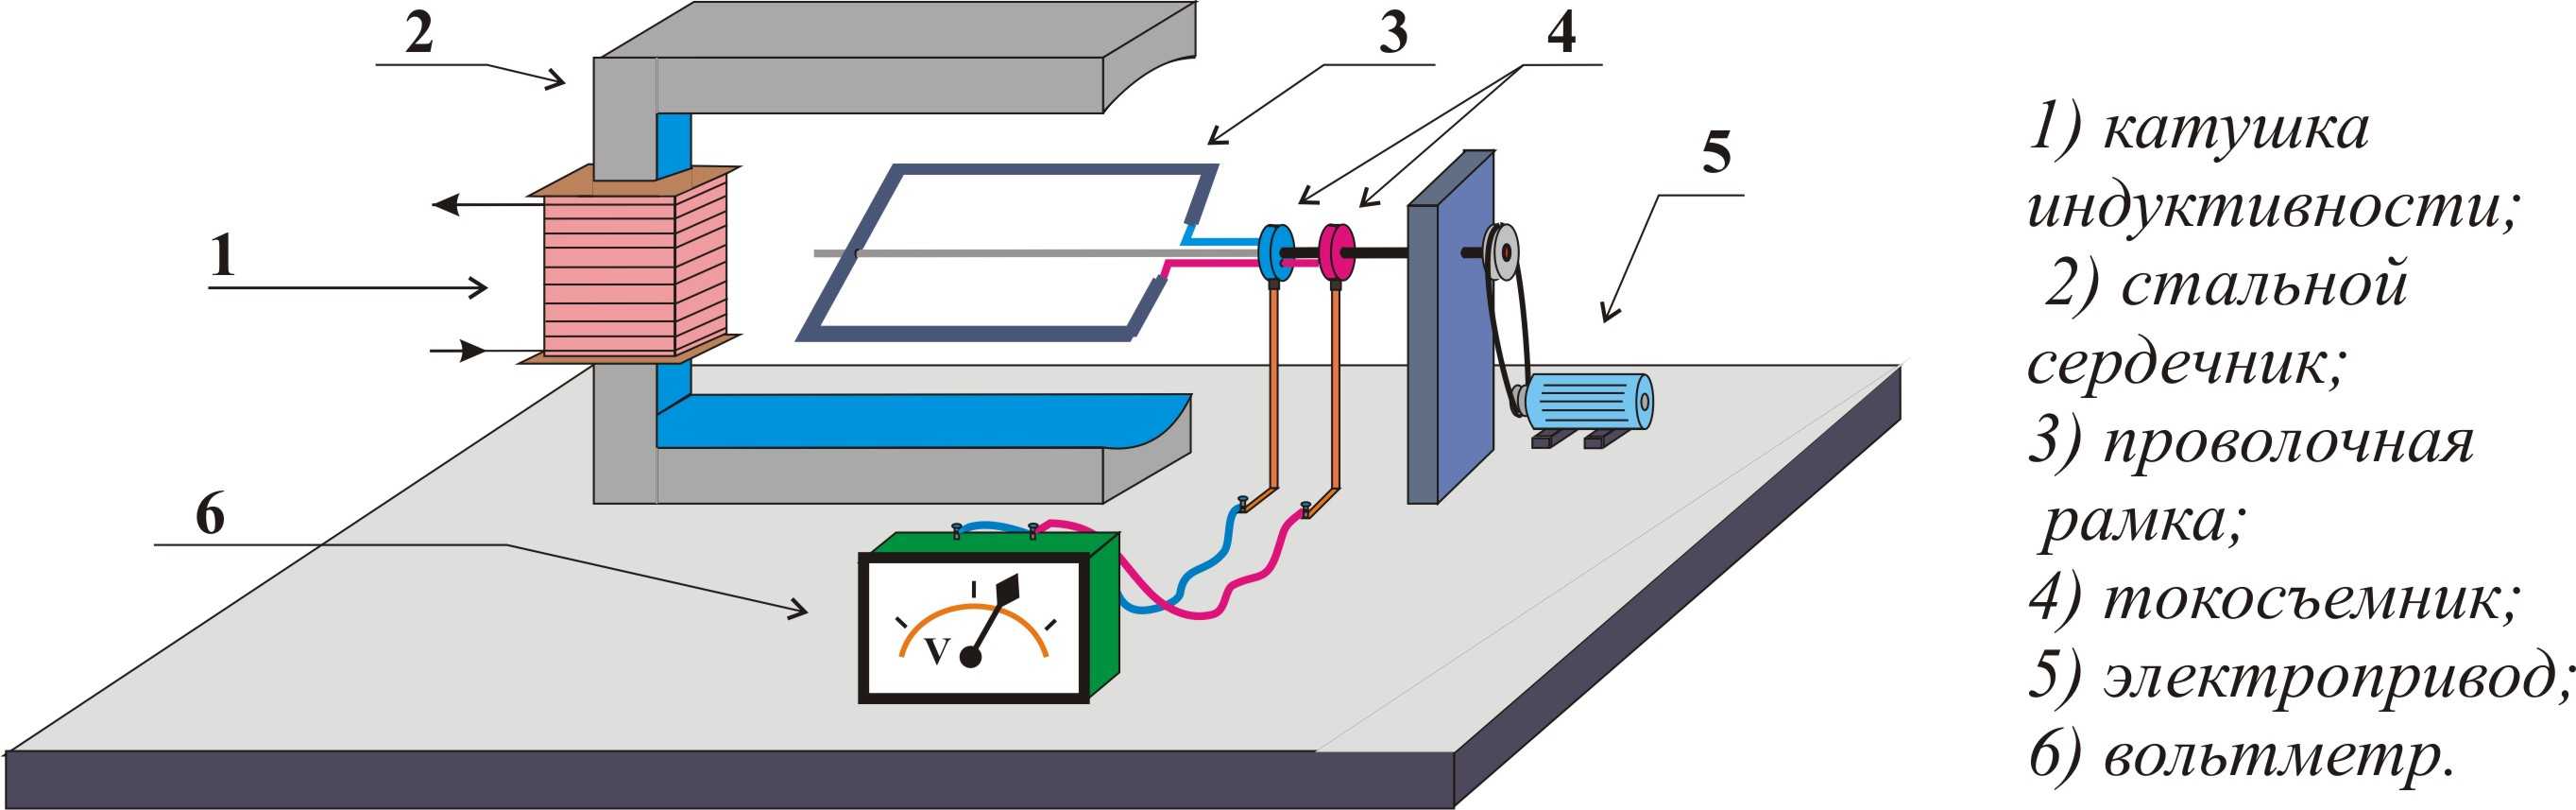 Как сделать электрогенератор — подробное описание как собрать своими руками генератор в домашних условиях (135 фото)